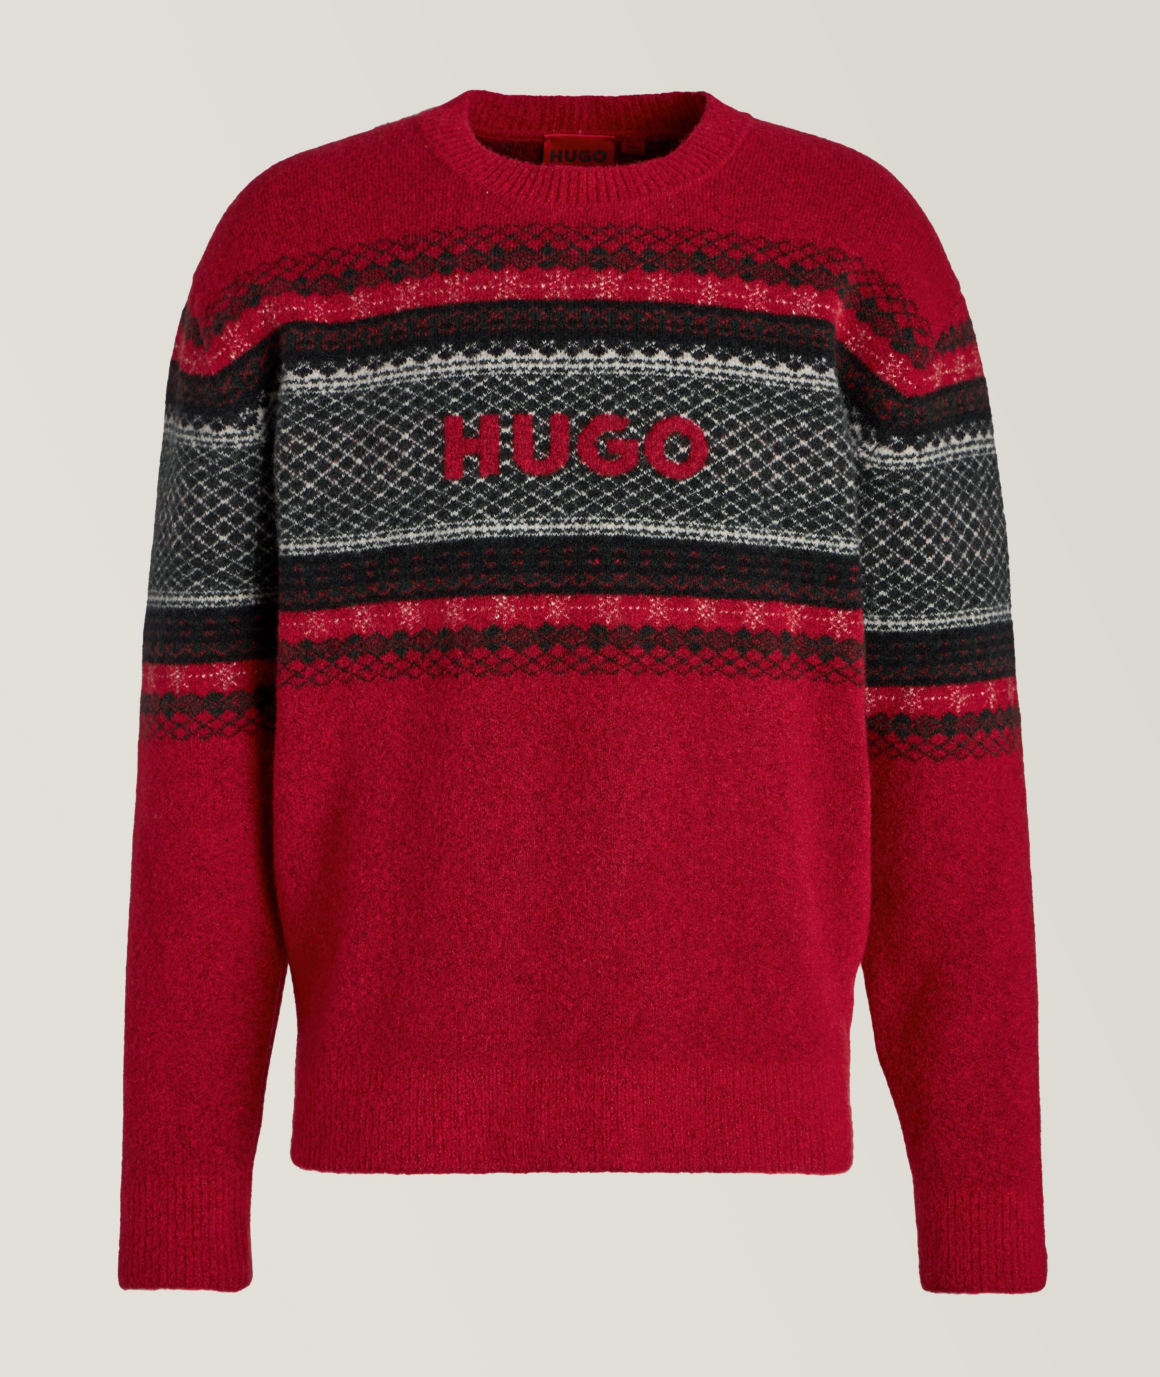 Hugo ugly christmas sweater alternatives for him men holiday Holt Renfrew Harry Rosen Kith